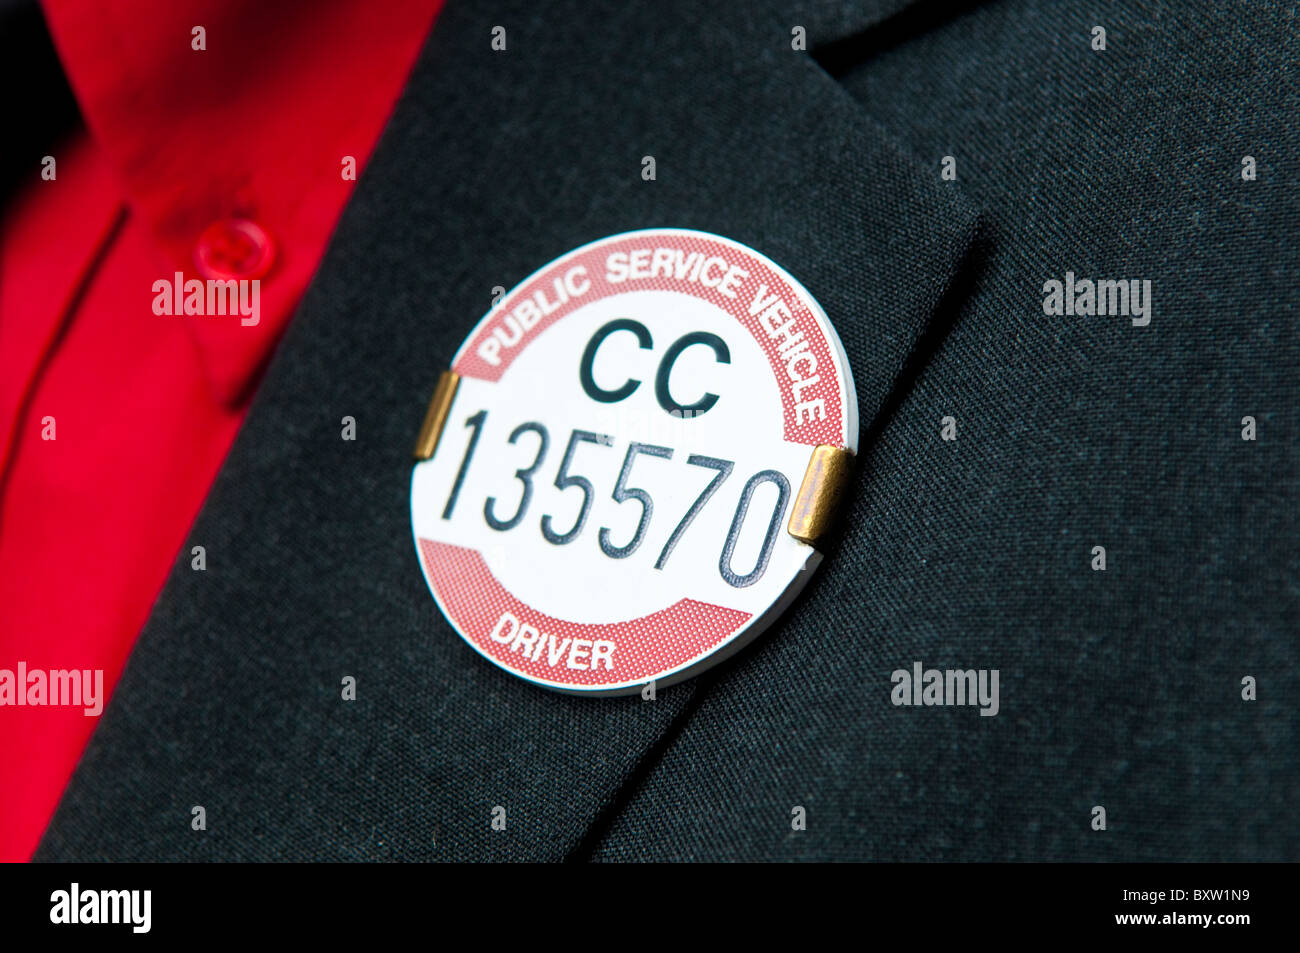 Öffentlichen Dienstes Fahrzeug Fahrer Abzeichen an einer Jacke Revers angeheftet Stockfoto